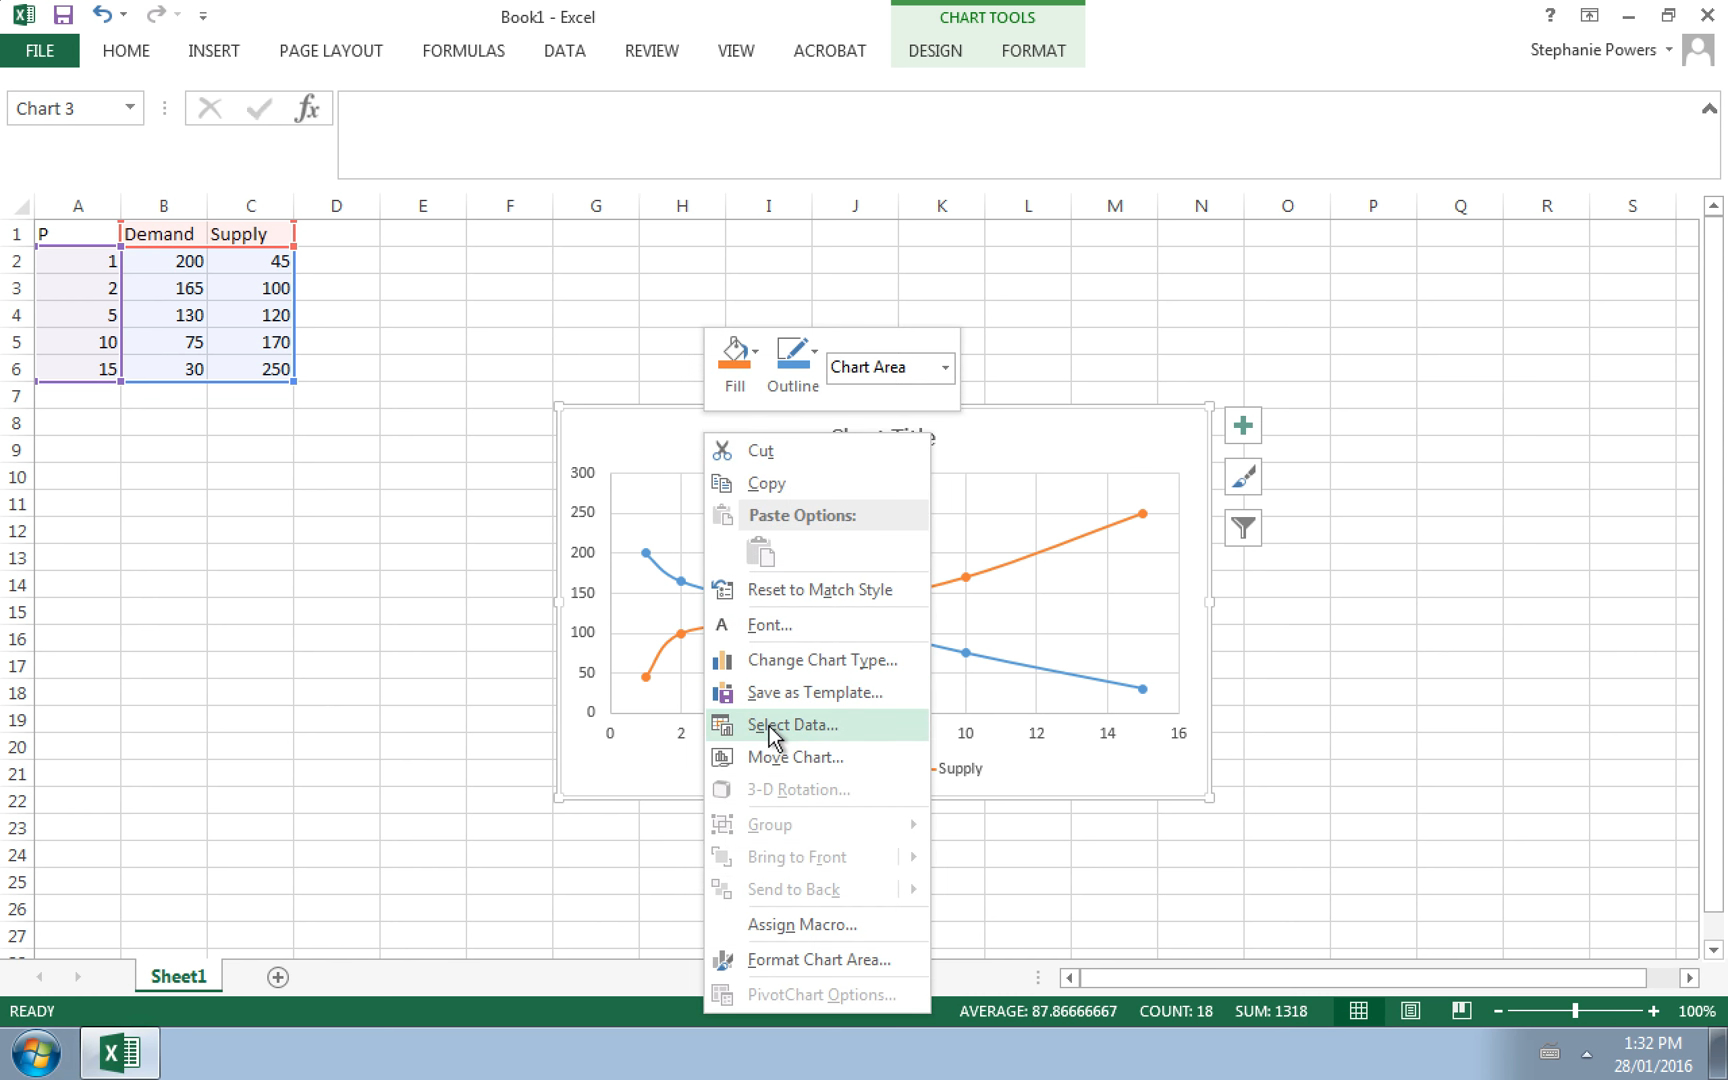 Vẽ biểu đồ cùng cầu trong Excel Vẽ biểu đồ cùng cầu trong Excel là một trong những kỹ năng đầy thú vị mà bạn có thể học được. Biểu đồ cùng cầu giúp bạn trình bày kết quả phân tích dữ liệu của mình theo cách trực quan nhất. Excel cung cấp các công cụ mạnh mẽ để bạn thiết kế những biểu đồ cùng cầu đẹp và chuyên nghiệp. Hãy thử sức với biểu đồ cùng cầu trong Excel để tạo ra những bản báo cáo độc đáo của mình!